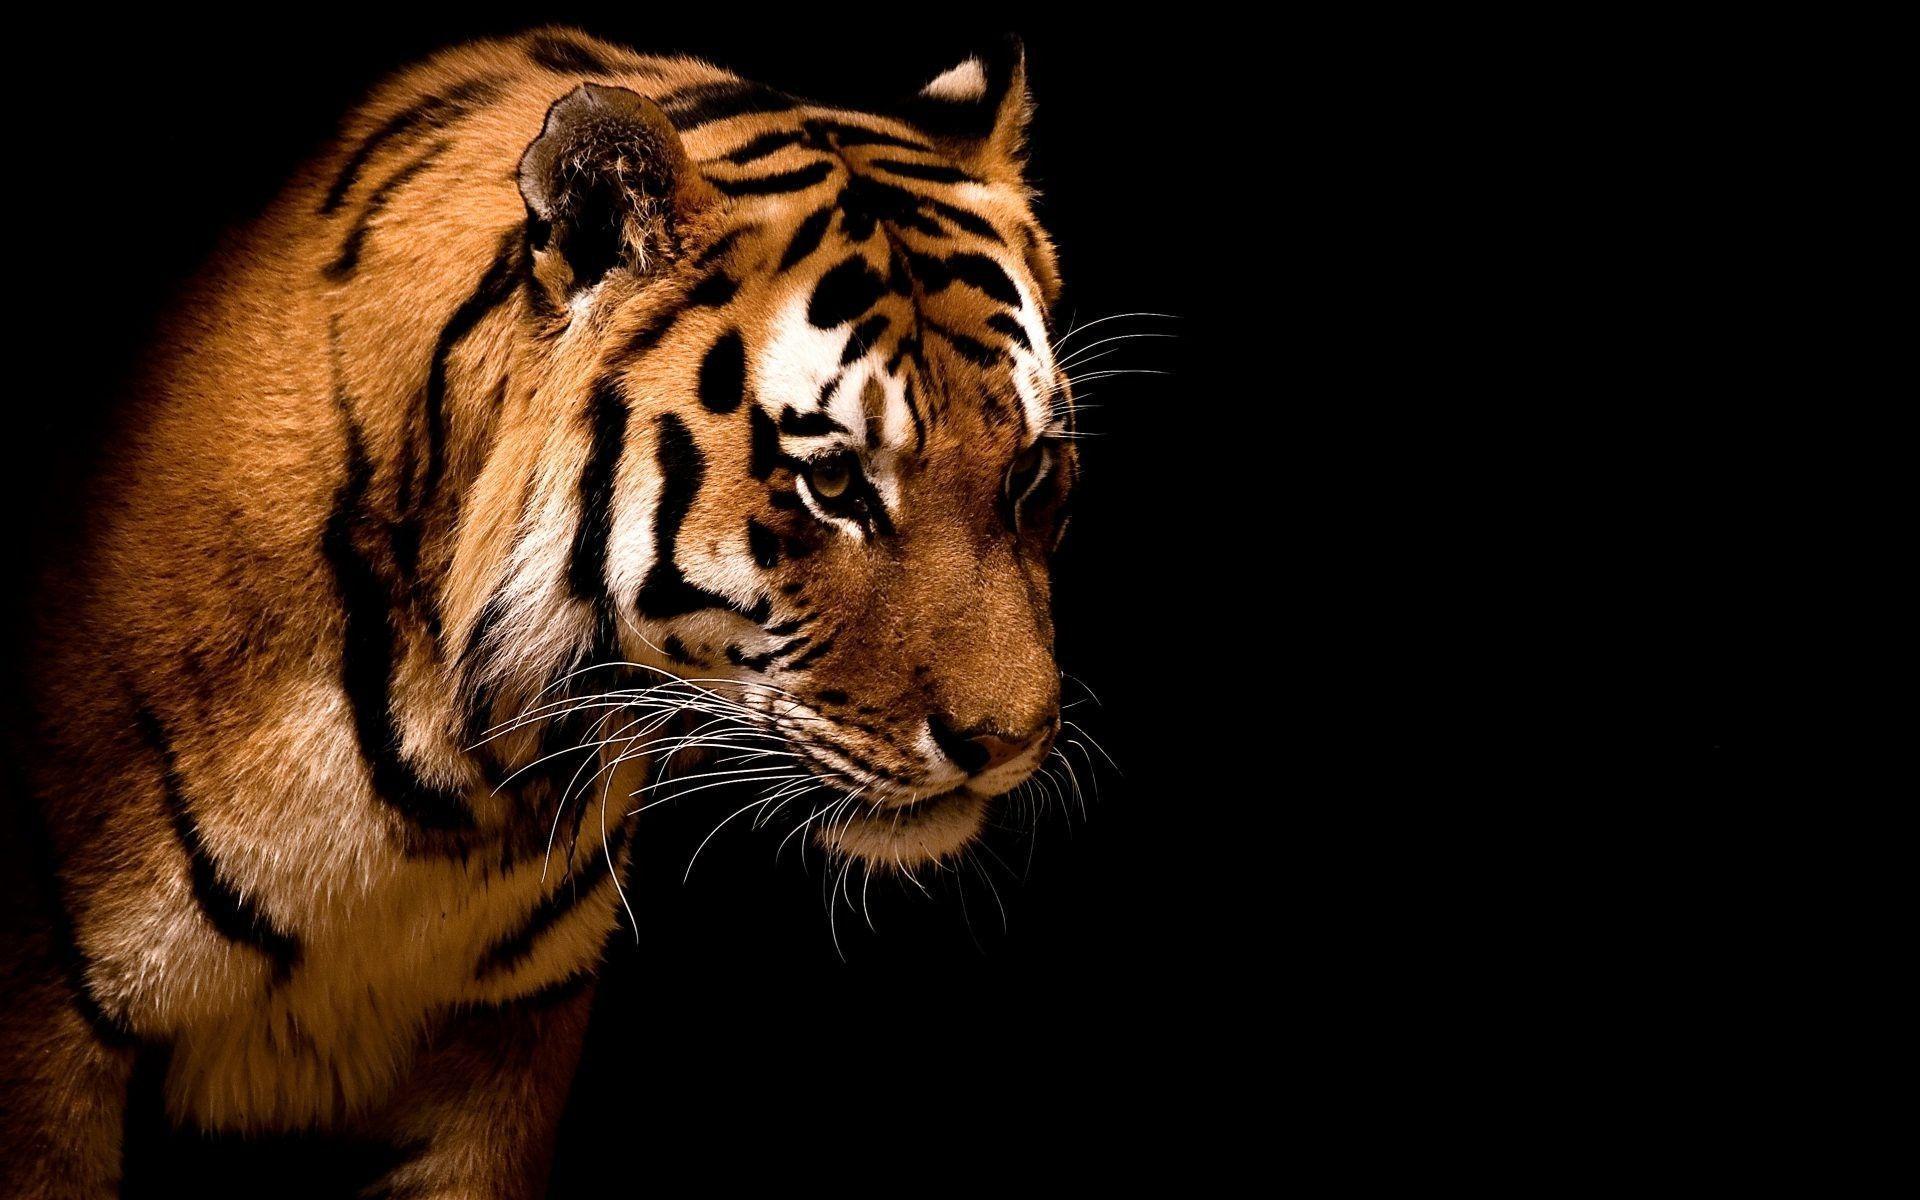 Hình nền với hình ảnh hổ rực rỡ sẽ làm cho bất kỳ ai cũng phải ngạc nhiên. Hãy truy cập ngay để cảm nhận được sự vẻ đẹp và sức mạnh của loài vật này. 